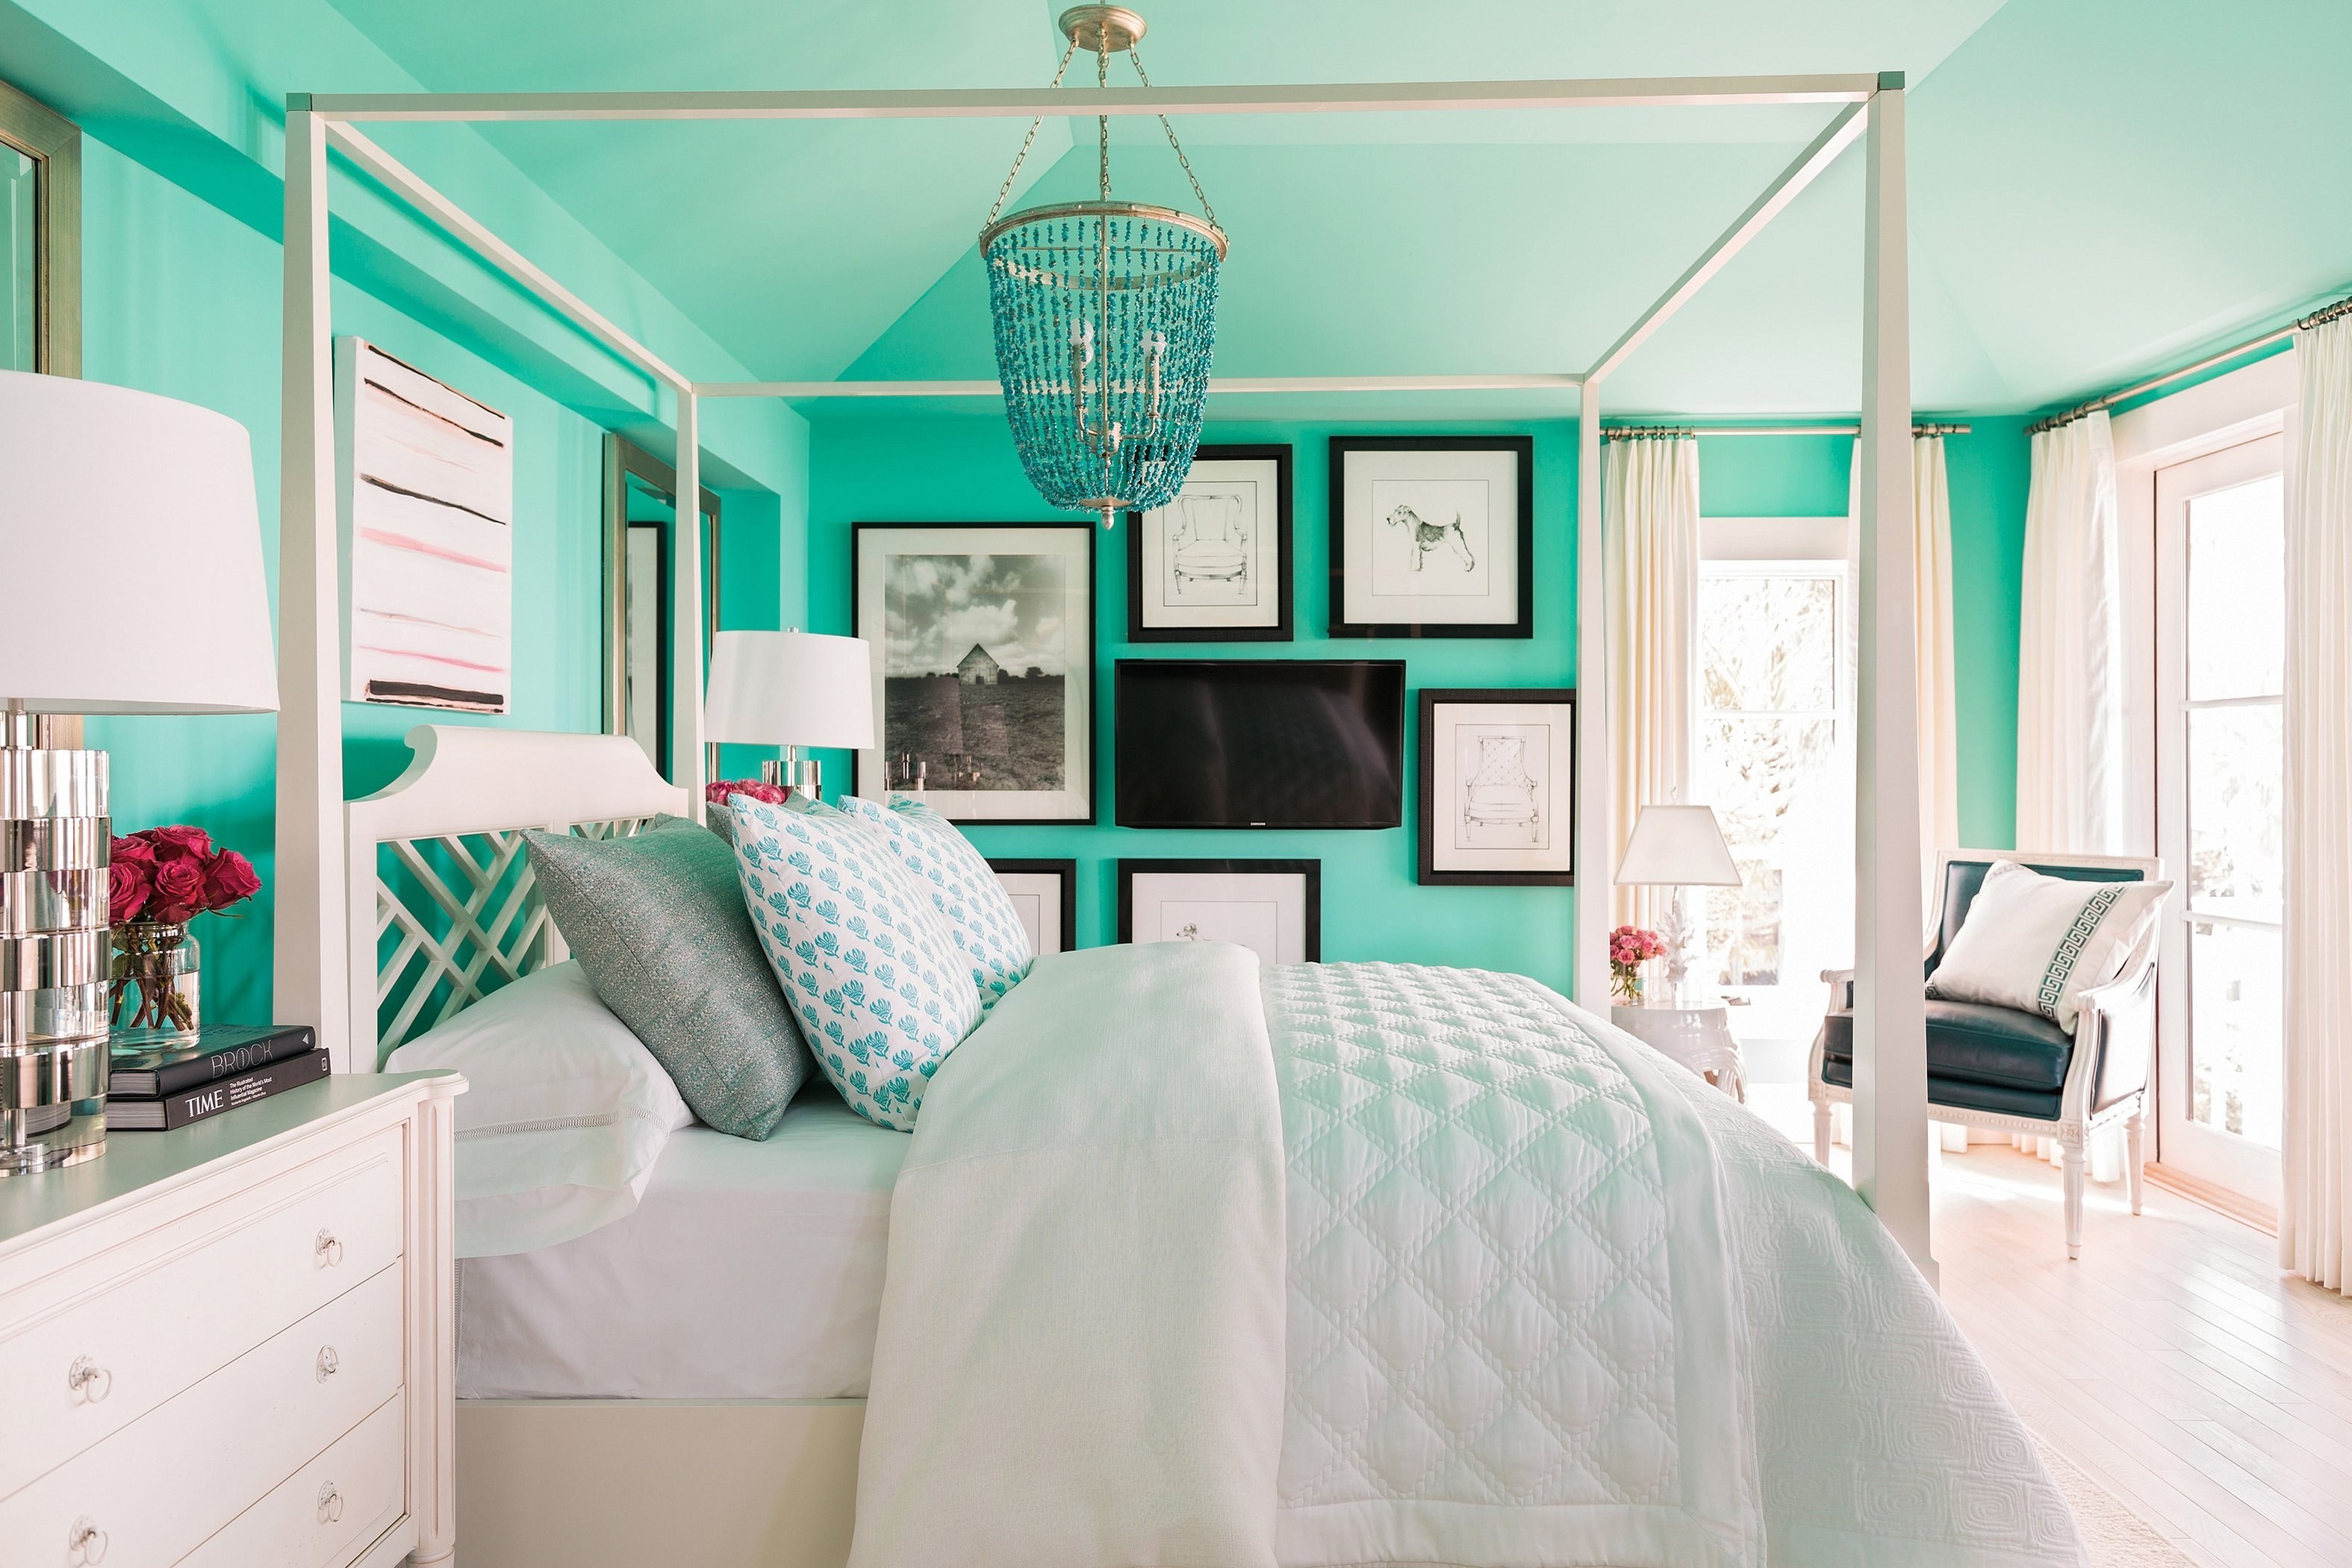 Тиффани дизайн. Спальня в бирюзовых тонах. Комната в бирюзовом стиле. Бирюзовый цвет в интерьере. Спальня в бирюзовом цвете.